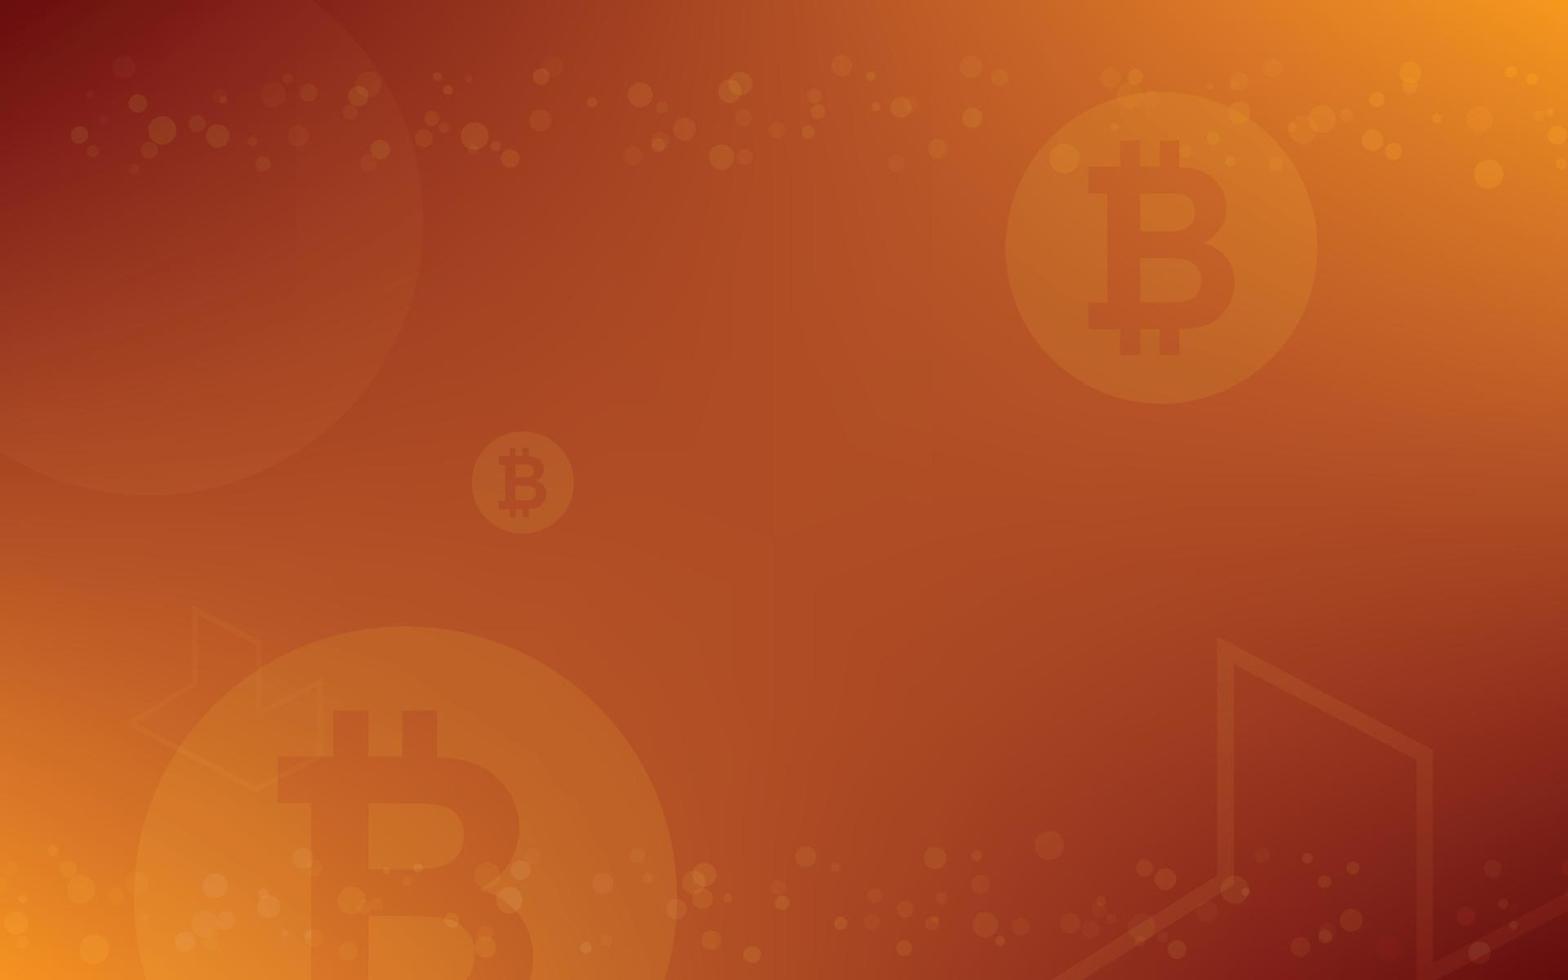 sfondo chiaro e scuro, vettore di illustrazione della valuta crittografica bitcoin per pagina, logo, carta, banner, web e stampa.